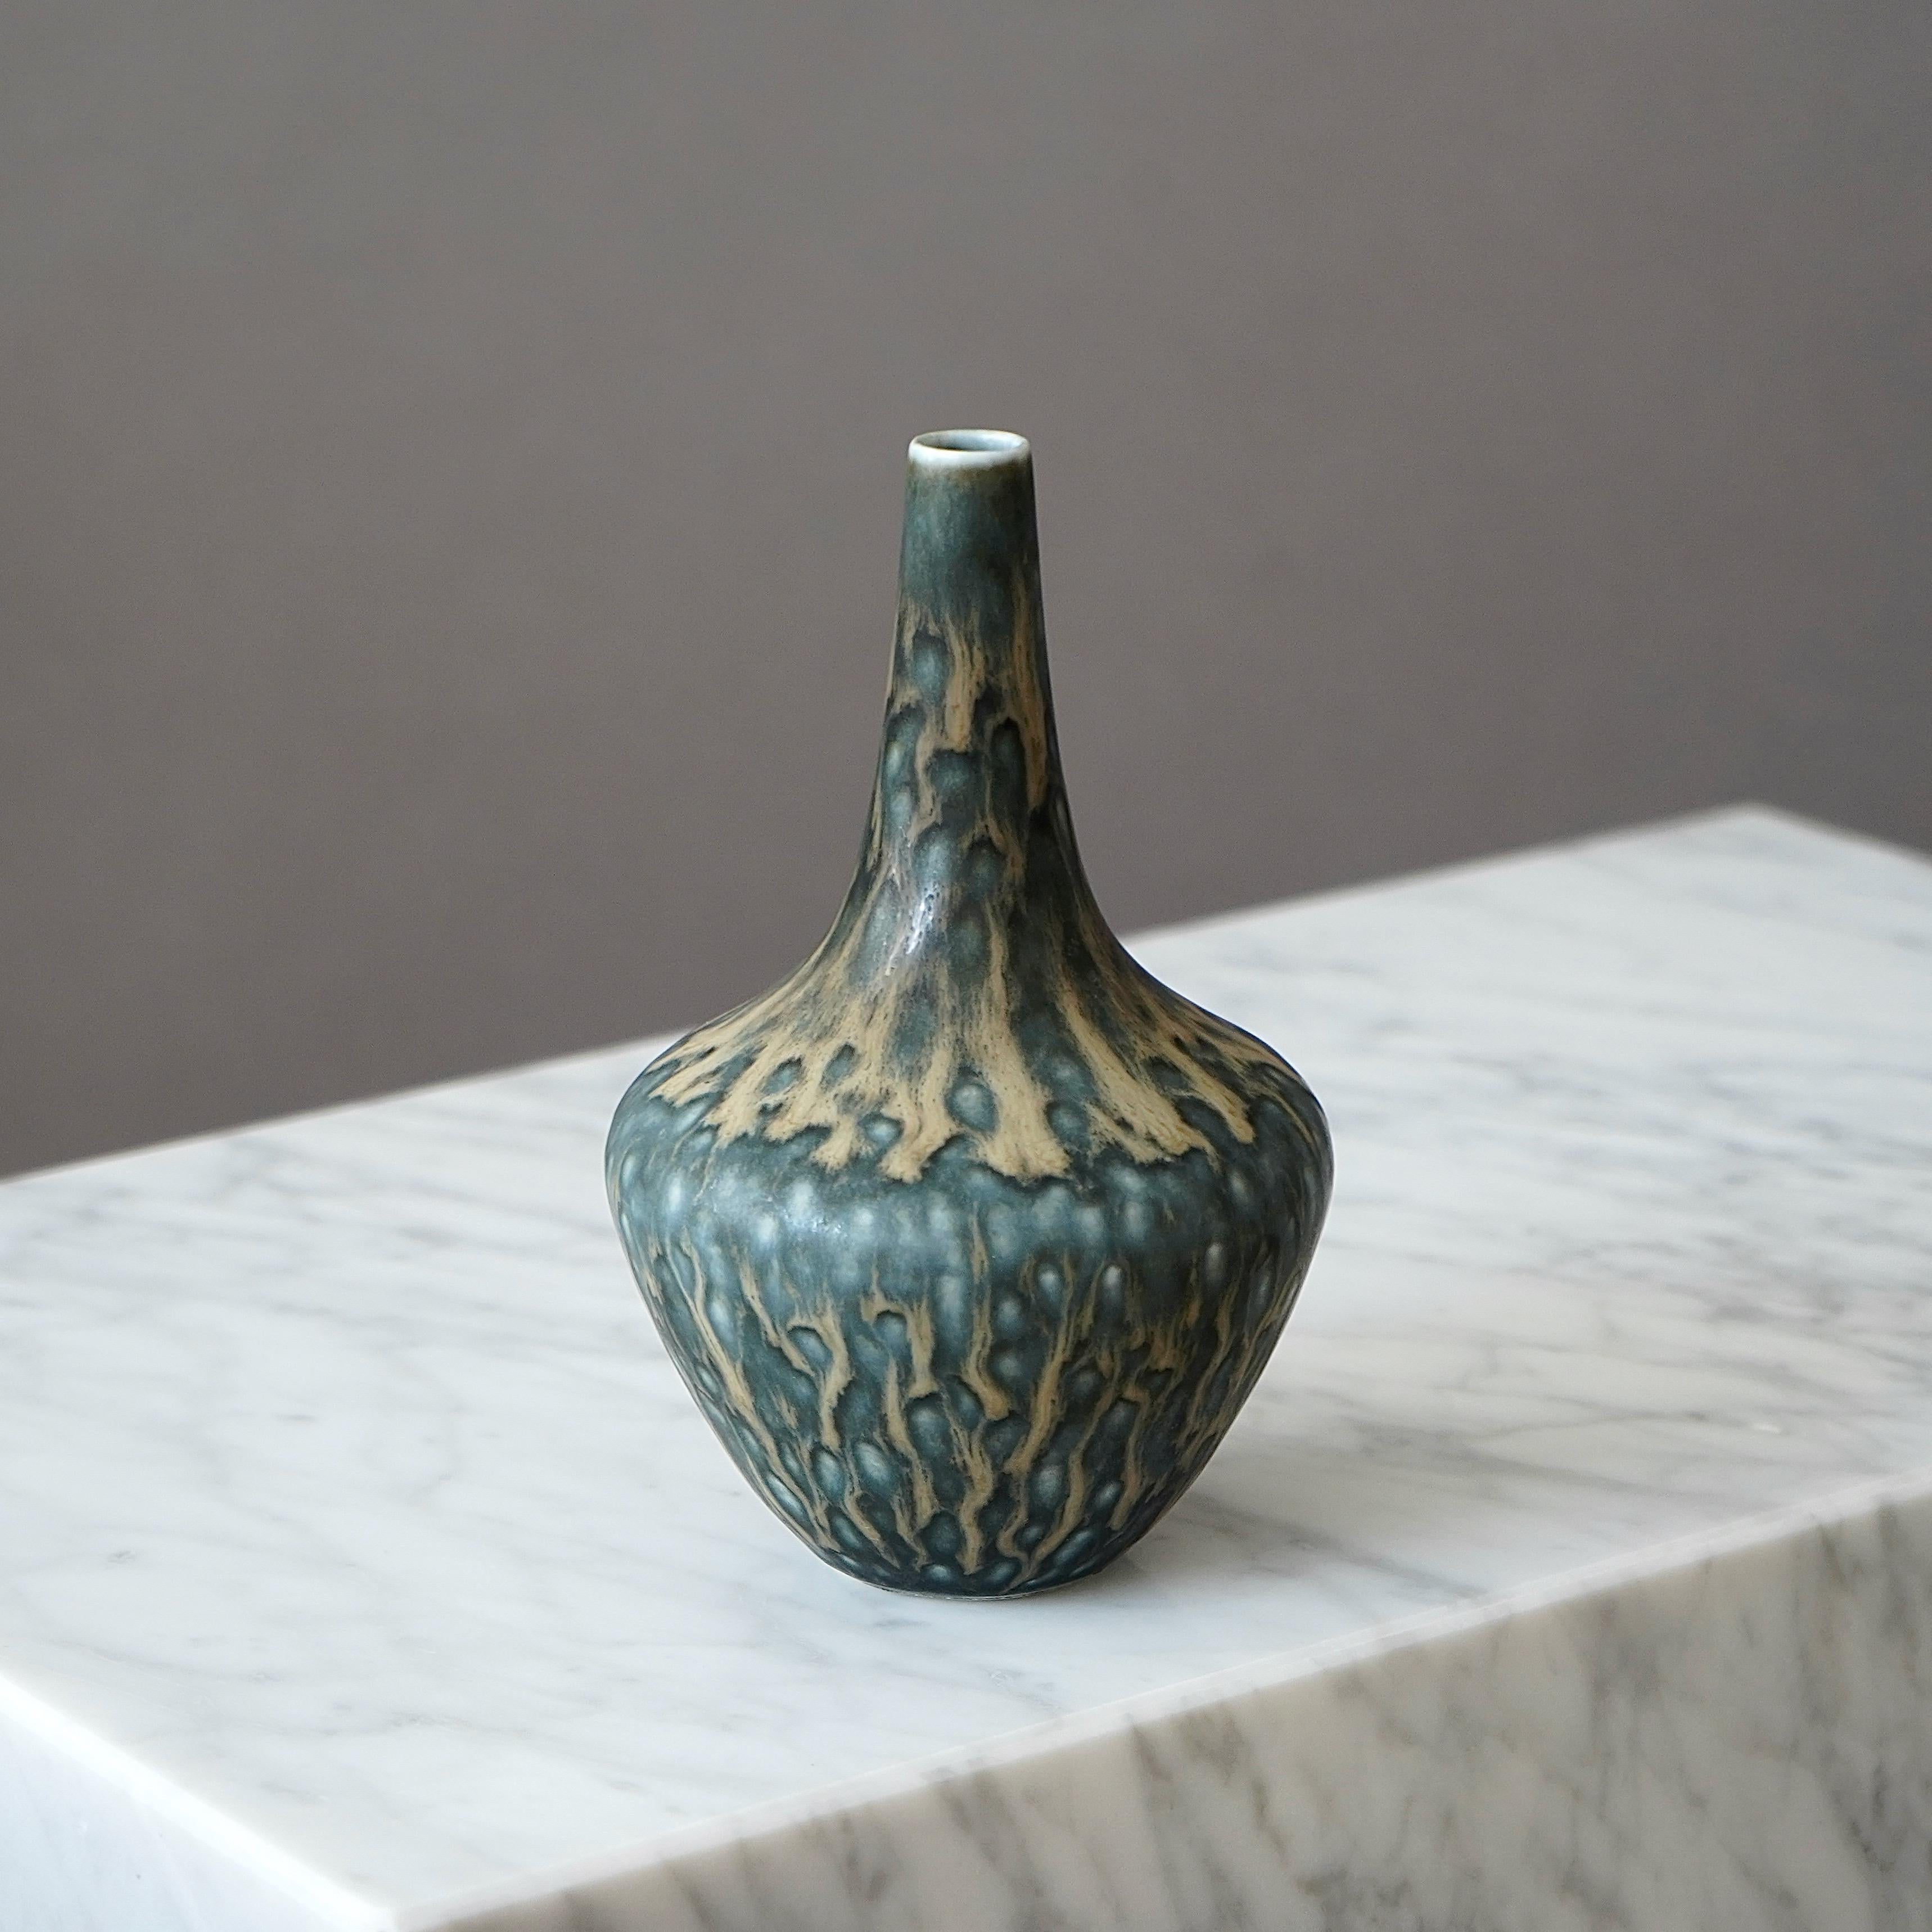 Eine schöne Vase aus Steingut mit toller Glasur. 
Entworfen von Gunnar Nylund für Rorstrand, Schweden, 1950er Jahre.  

Ausgezeichneter Zustand. Eingeschnittene Signatur 